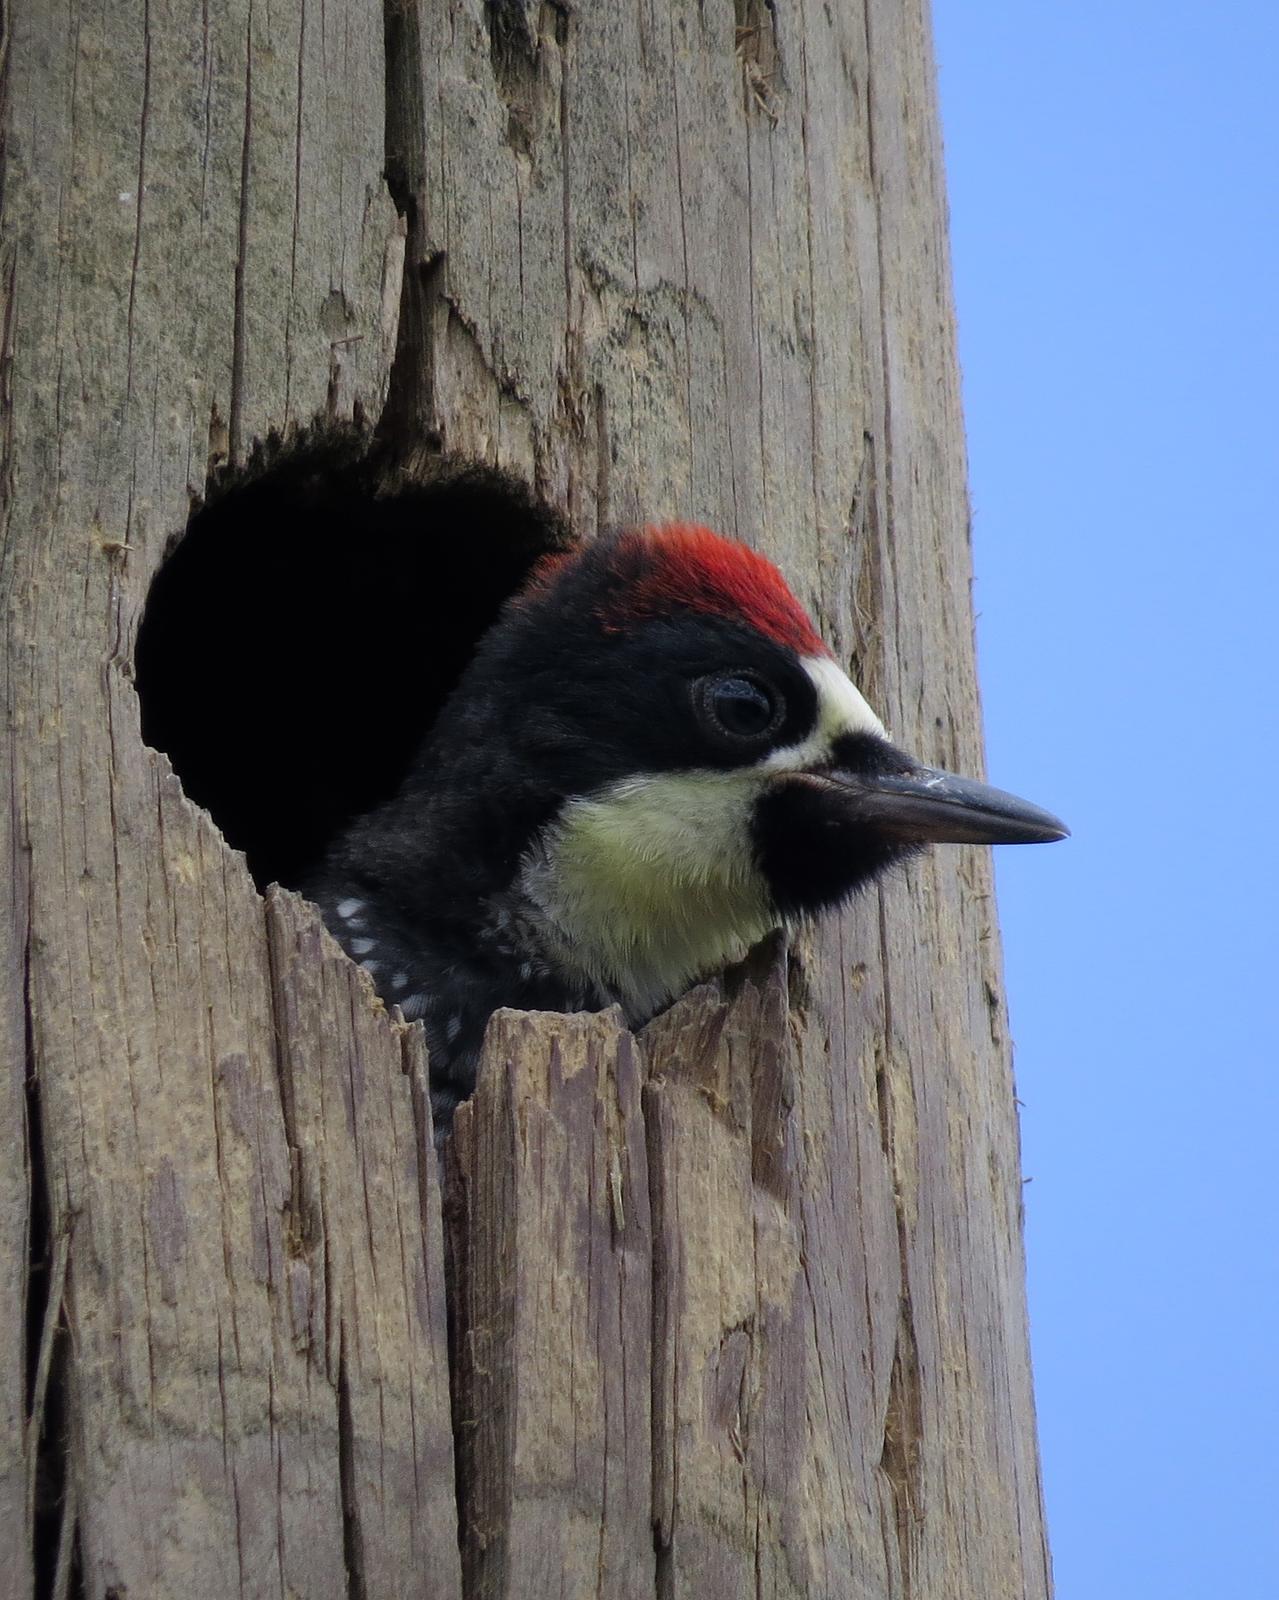 Acorn Woodpecker Photo by John van Dort